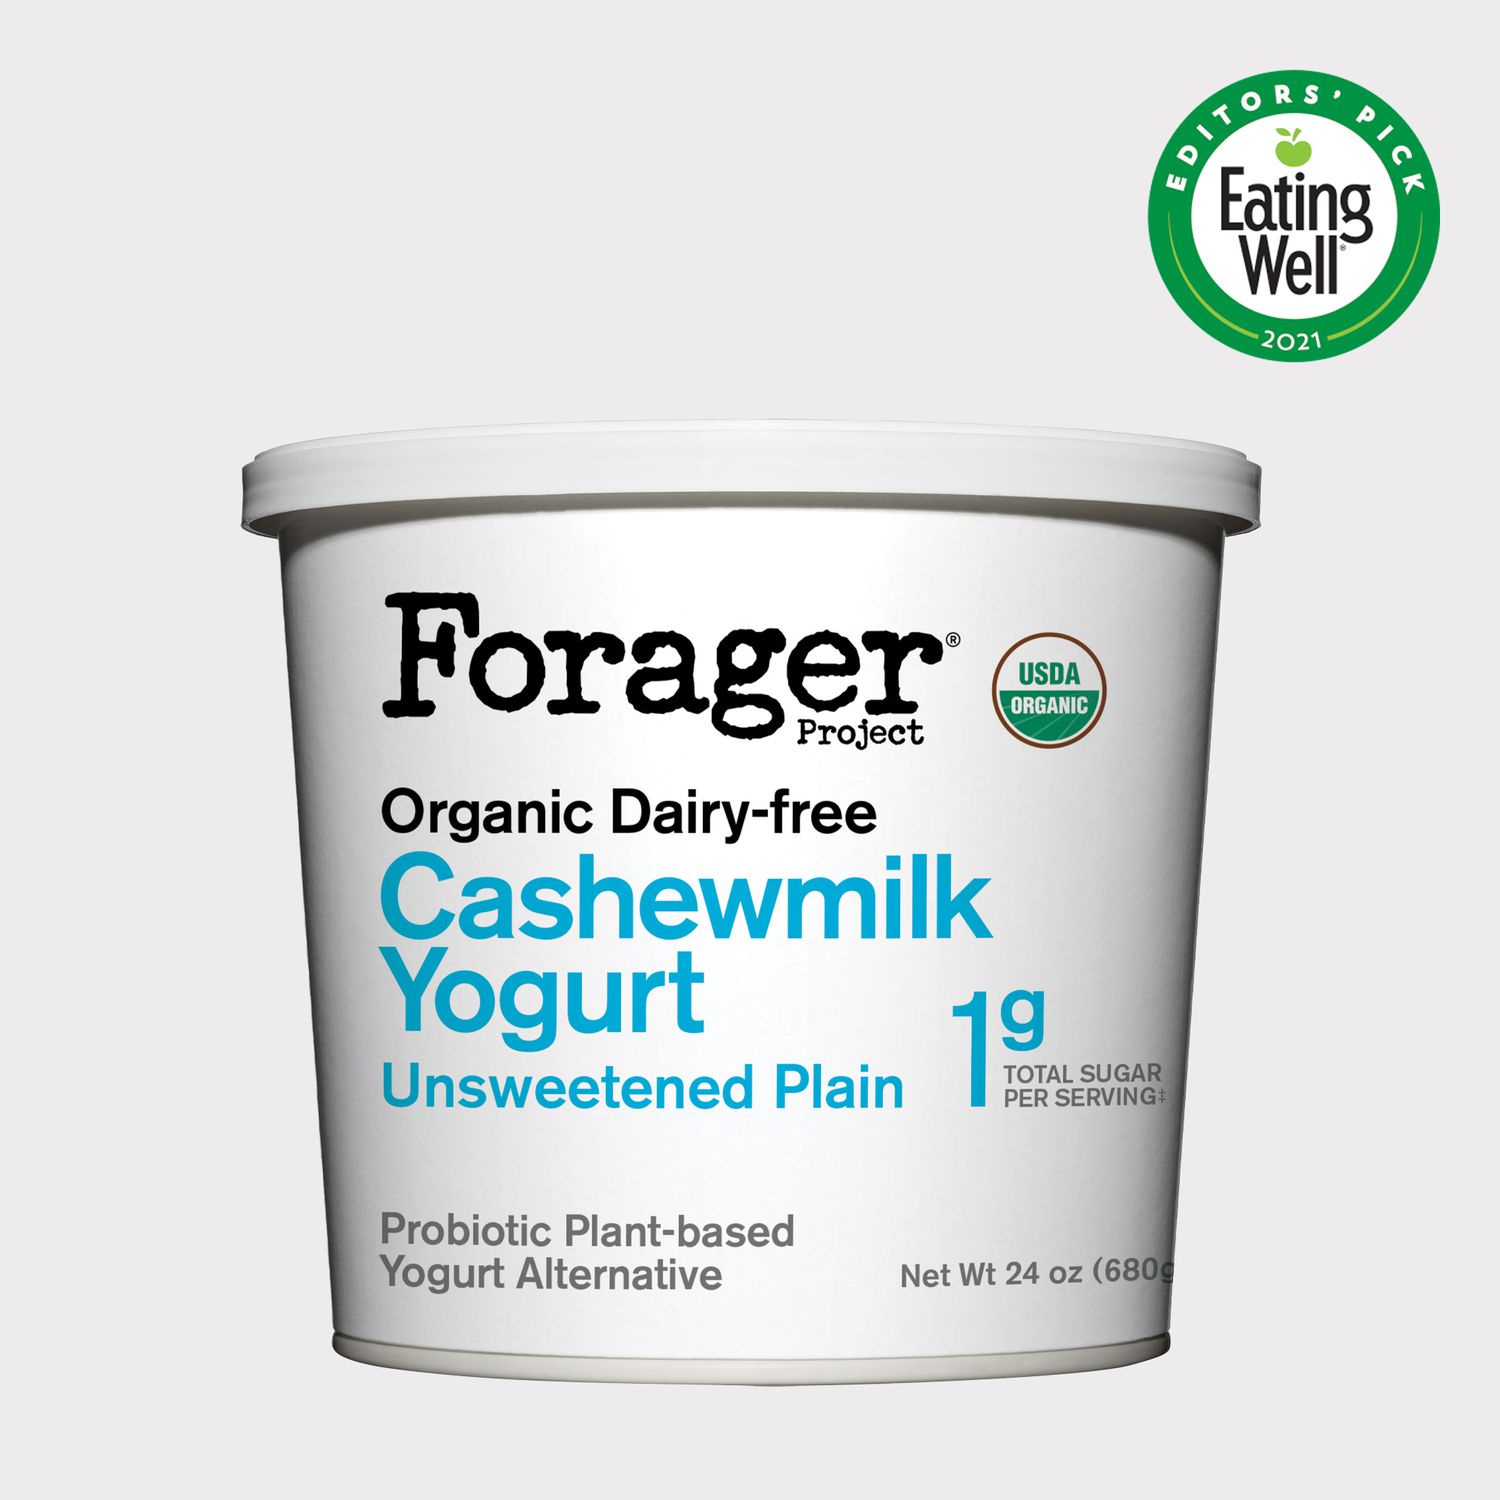 FORAGER PROJECT Organic Dairy-free Unsweetened Plain Cashewmilk Yogurt